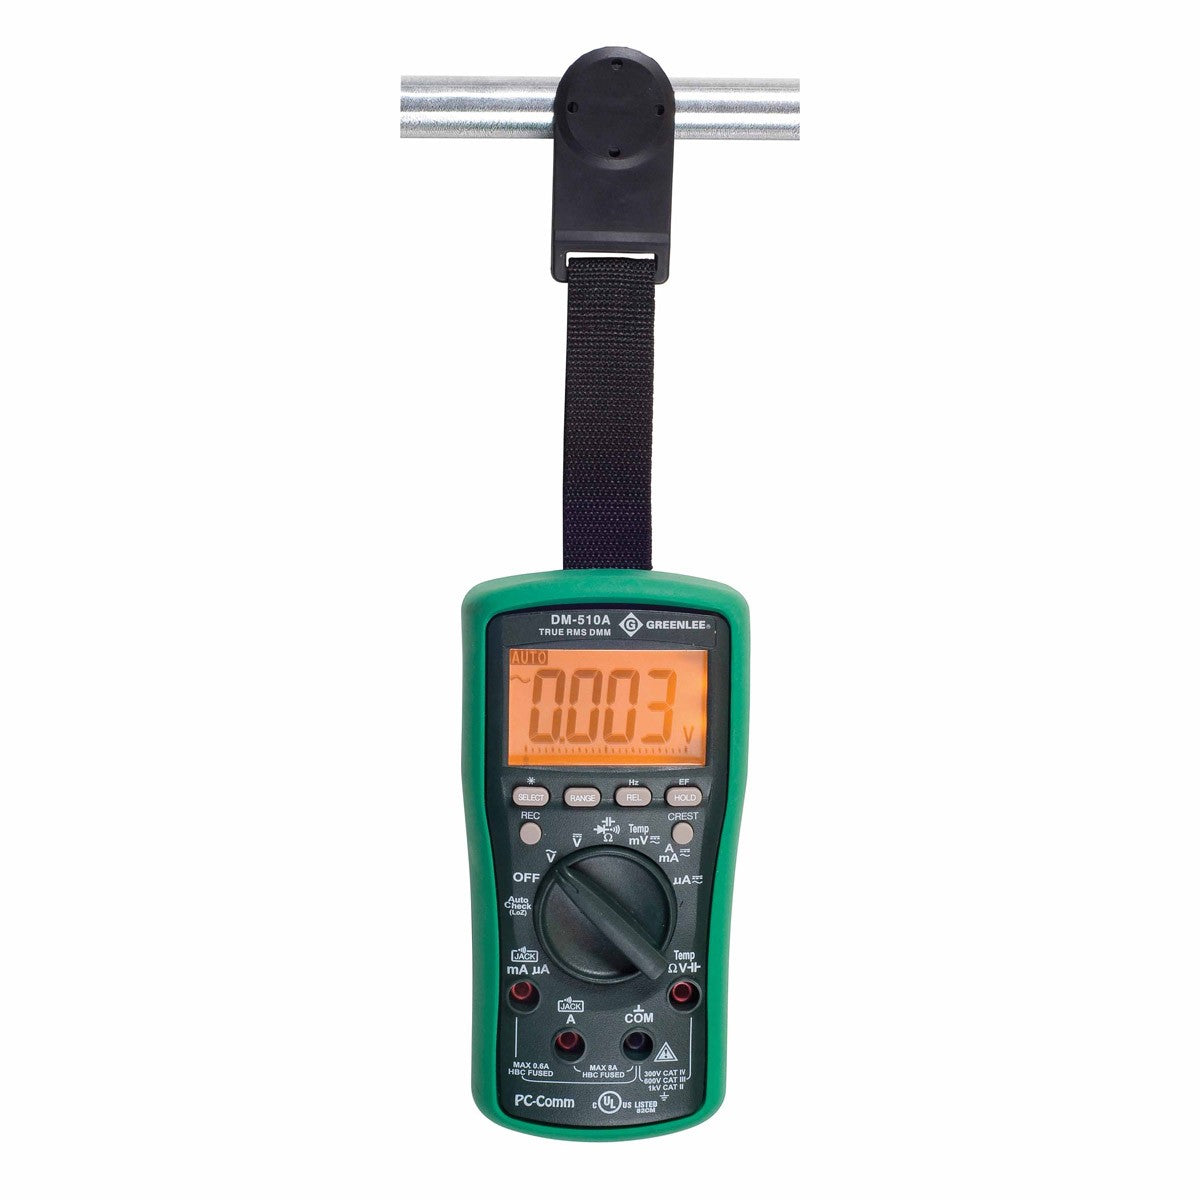 Greenlee DM-510A Digital Multimeter